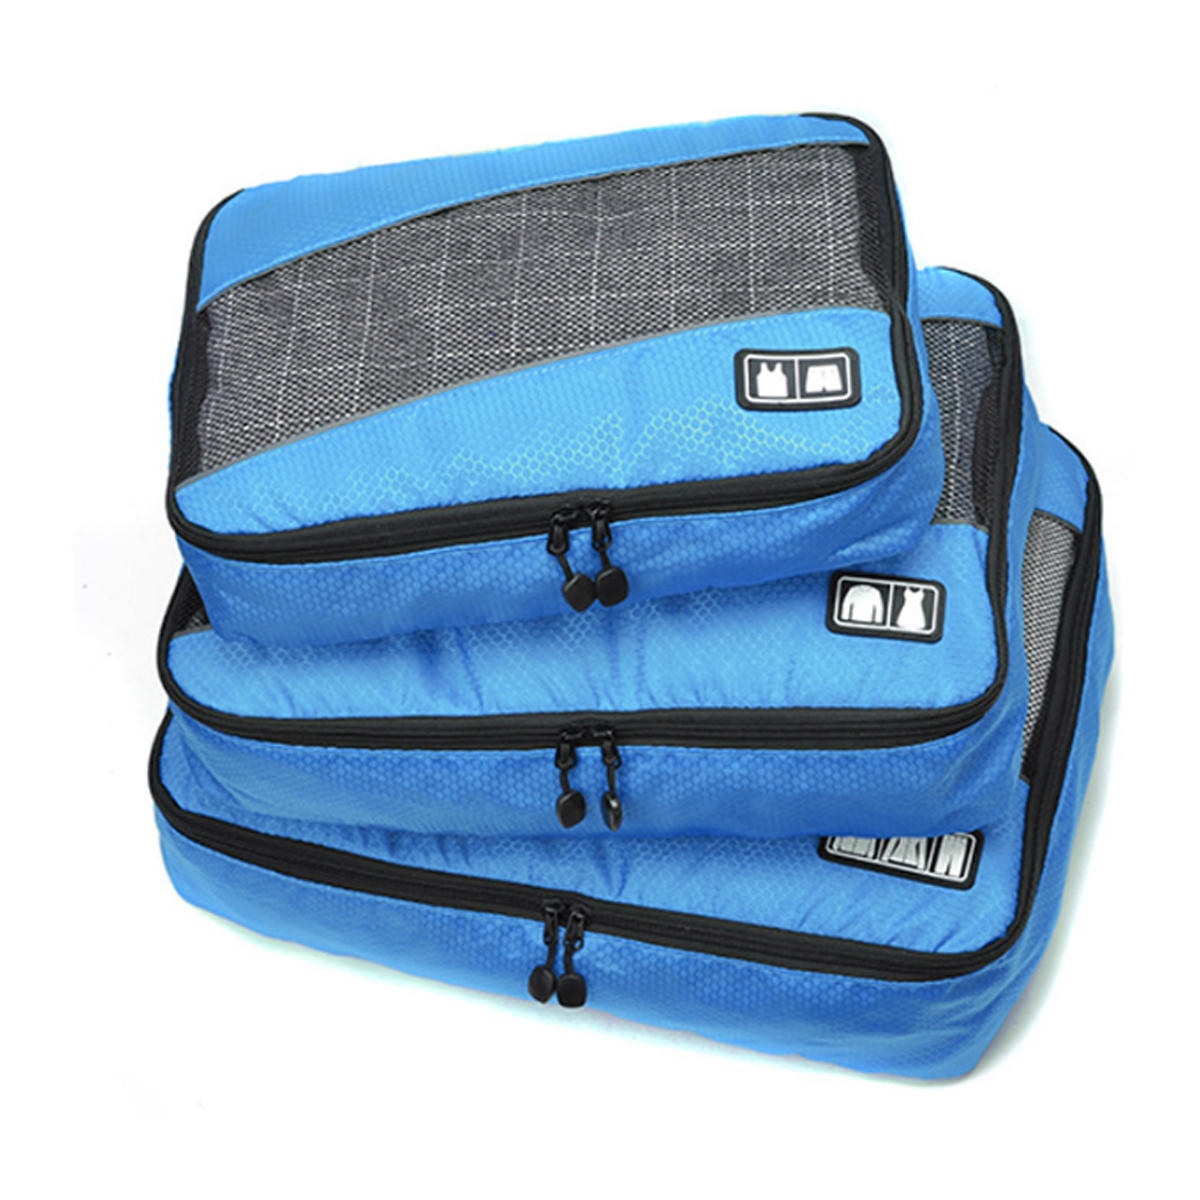 Set di 3 sacchetti impermeabili per riporre biancheria intima, abbigliamento e prodotti per l'igiene personale durante i viaggi